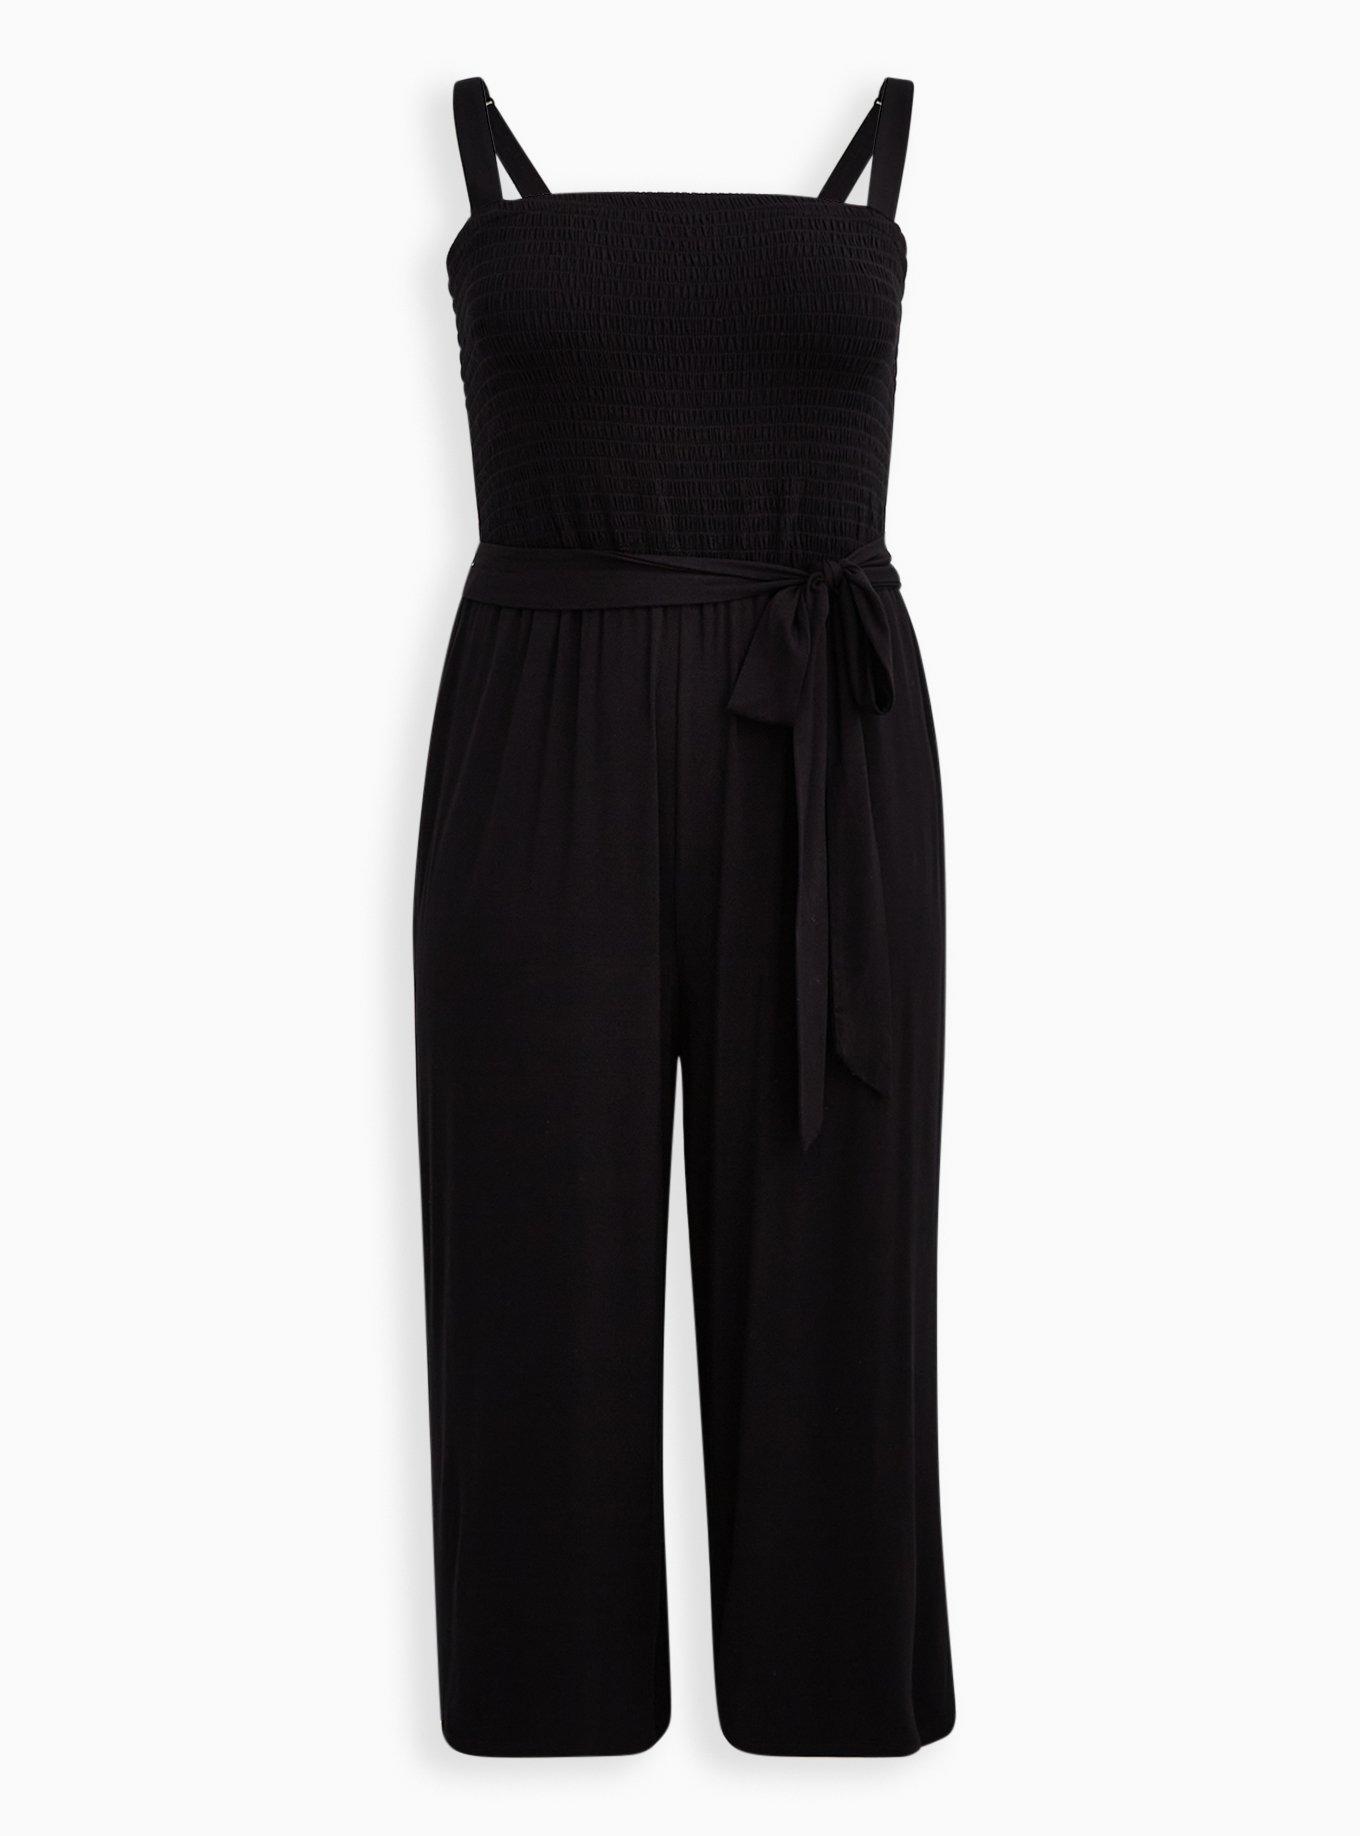 Plus Size - Black Super Soft Smocked Jumpsuit - Torrid